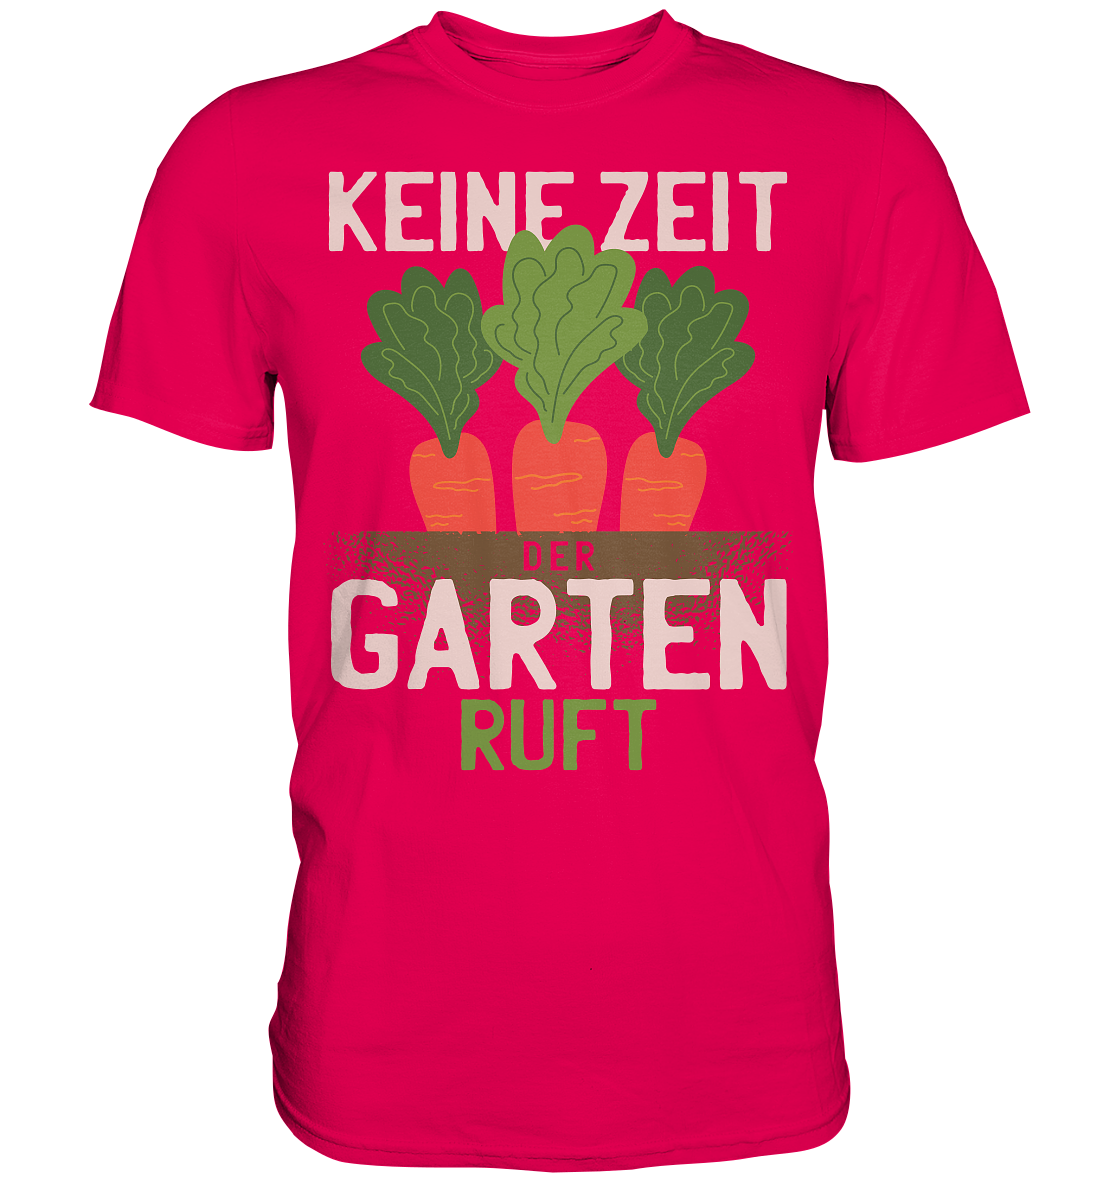 Keine Zeit der Garten ruft - Premium Shirt - Online Kaufhaus München